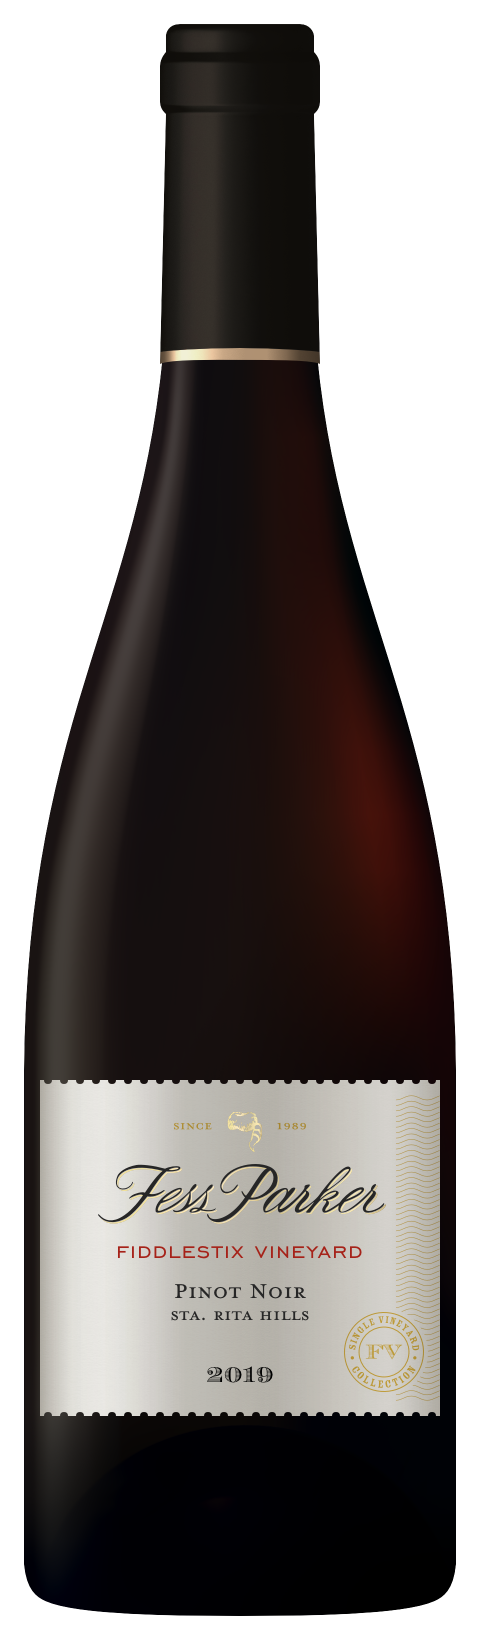 Bottle shot of Fiddlestix Vineyard Pinot Noir